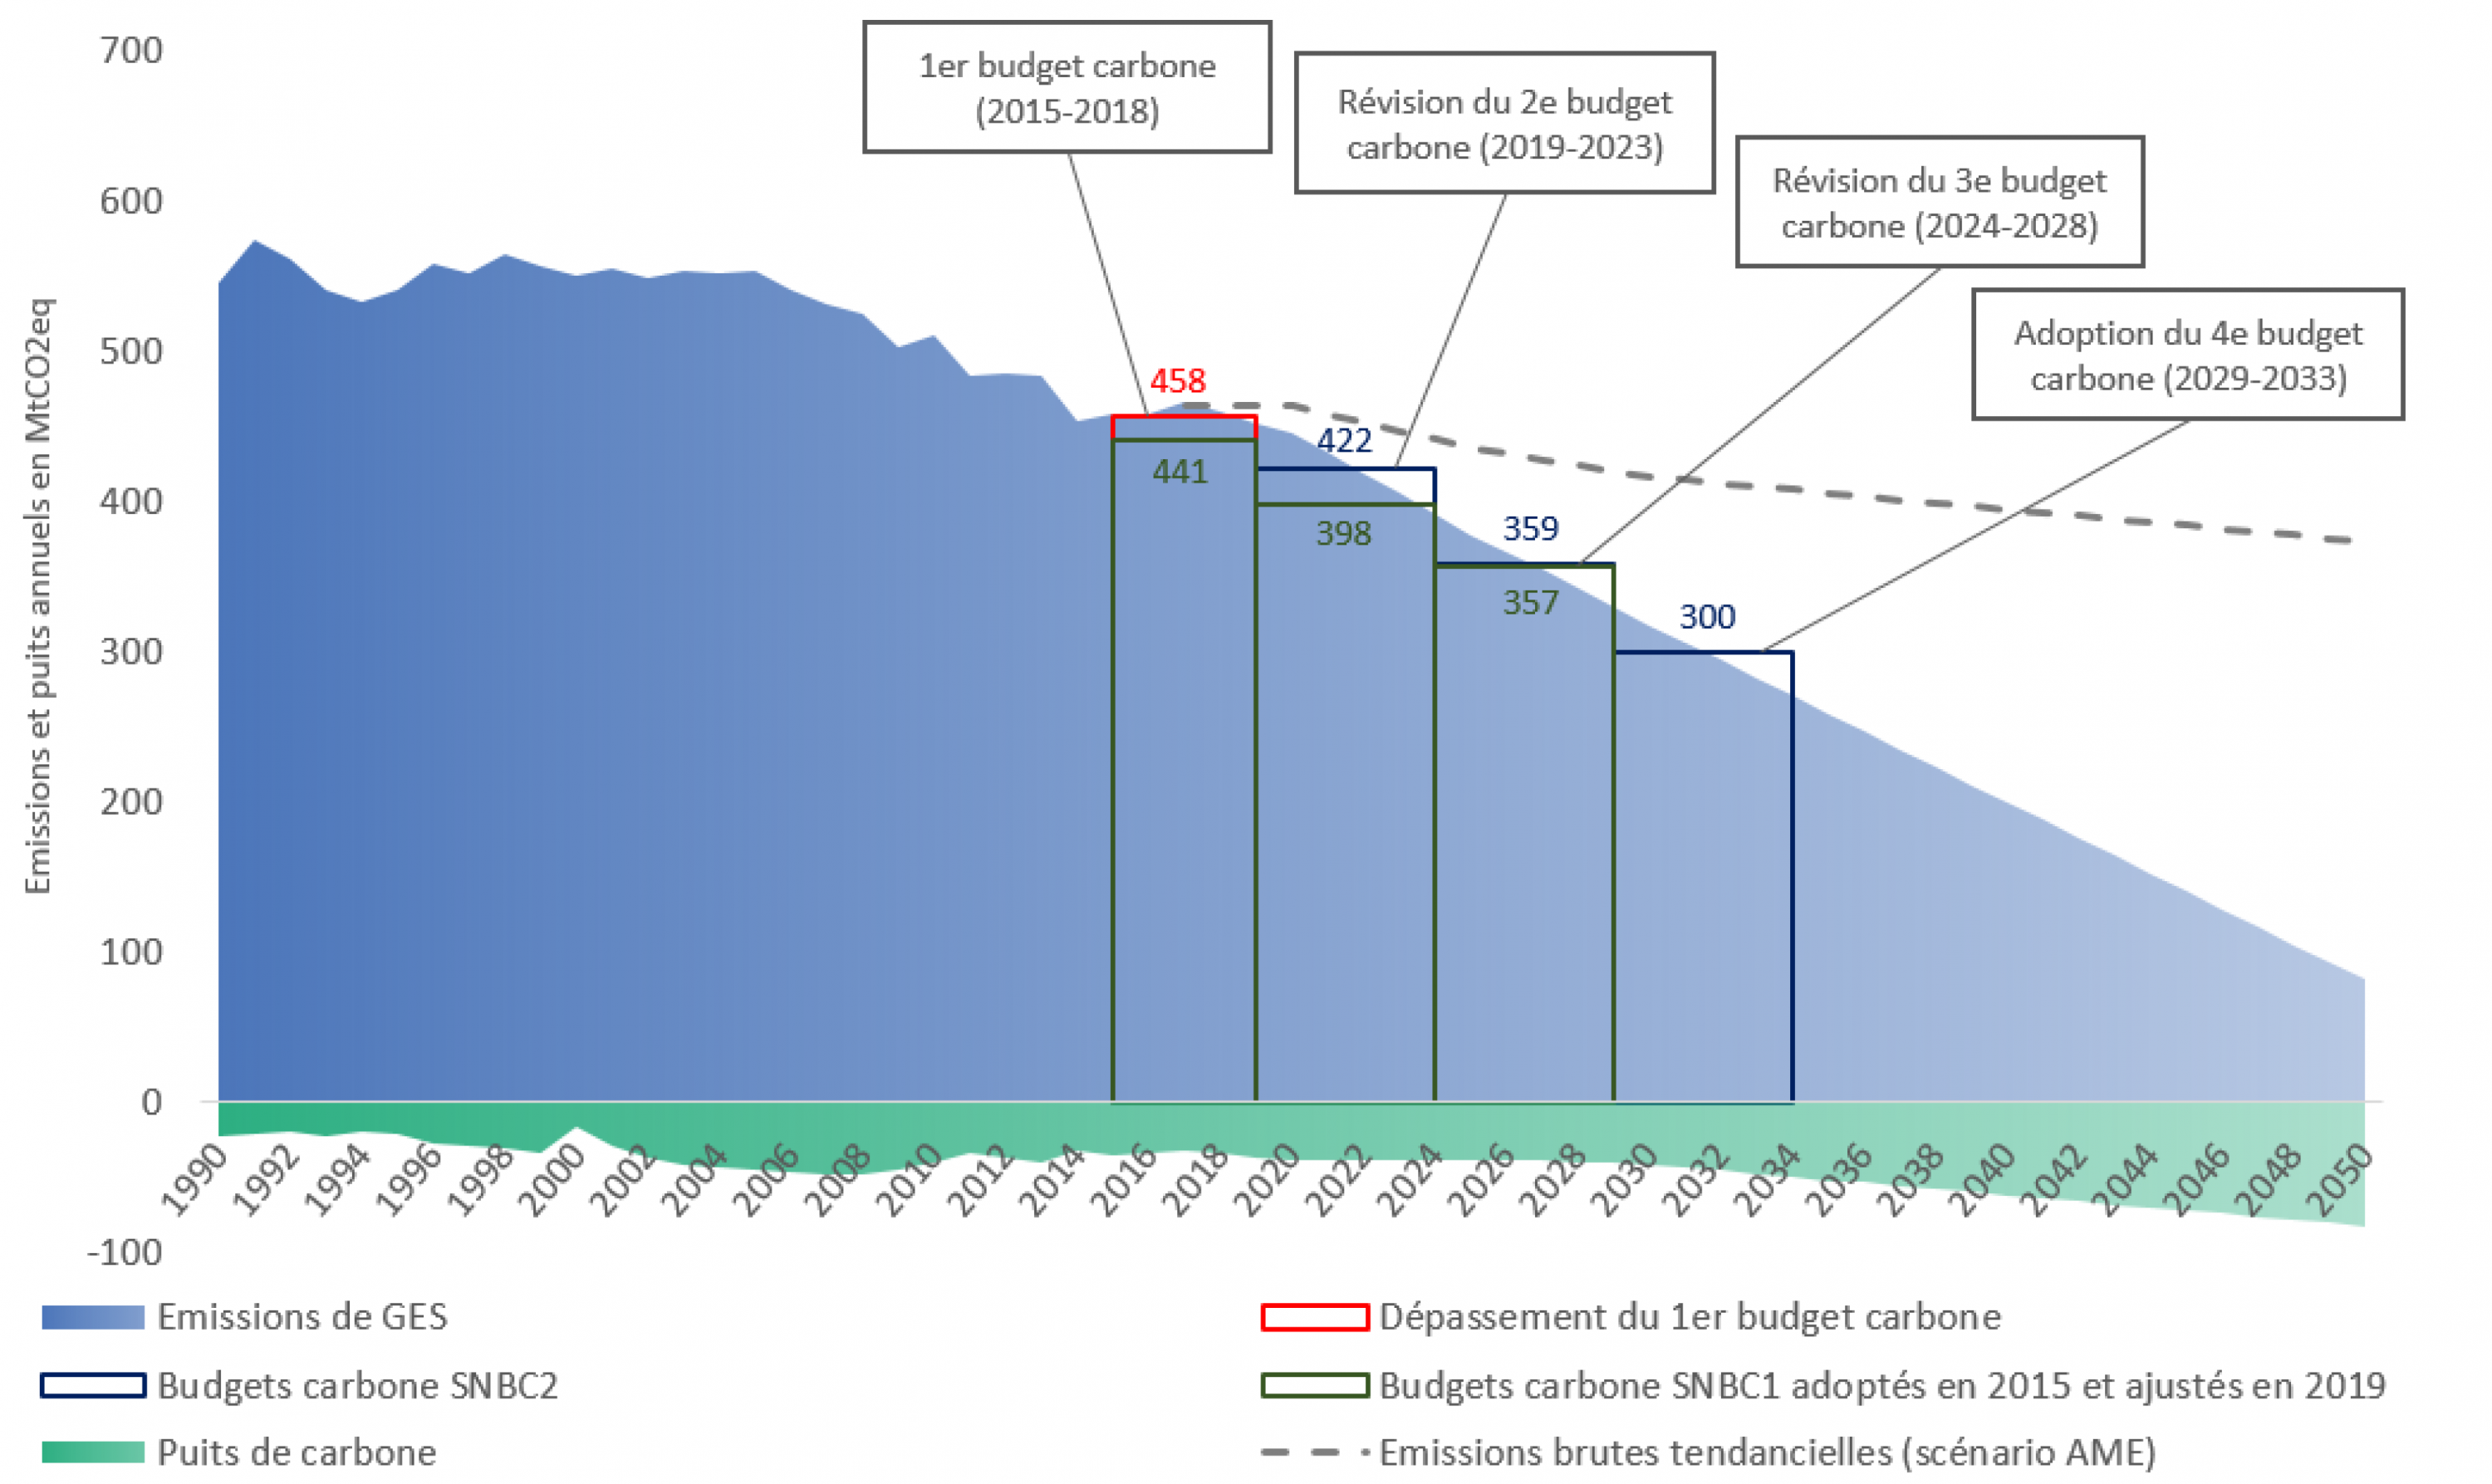 Graphe de l’historique et de la trajectoire des émissions nettes de gaz à effet de serre en France entre 1990 et 2050